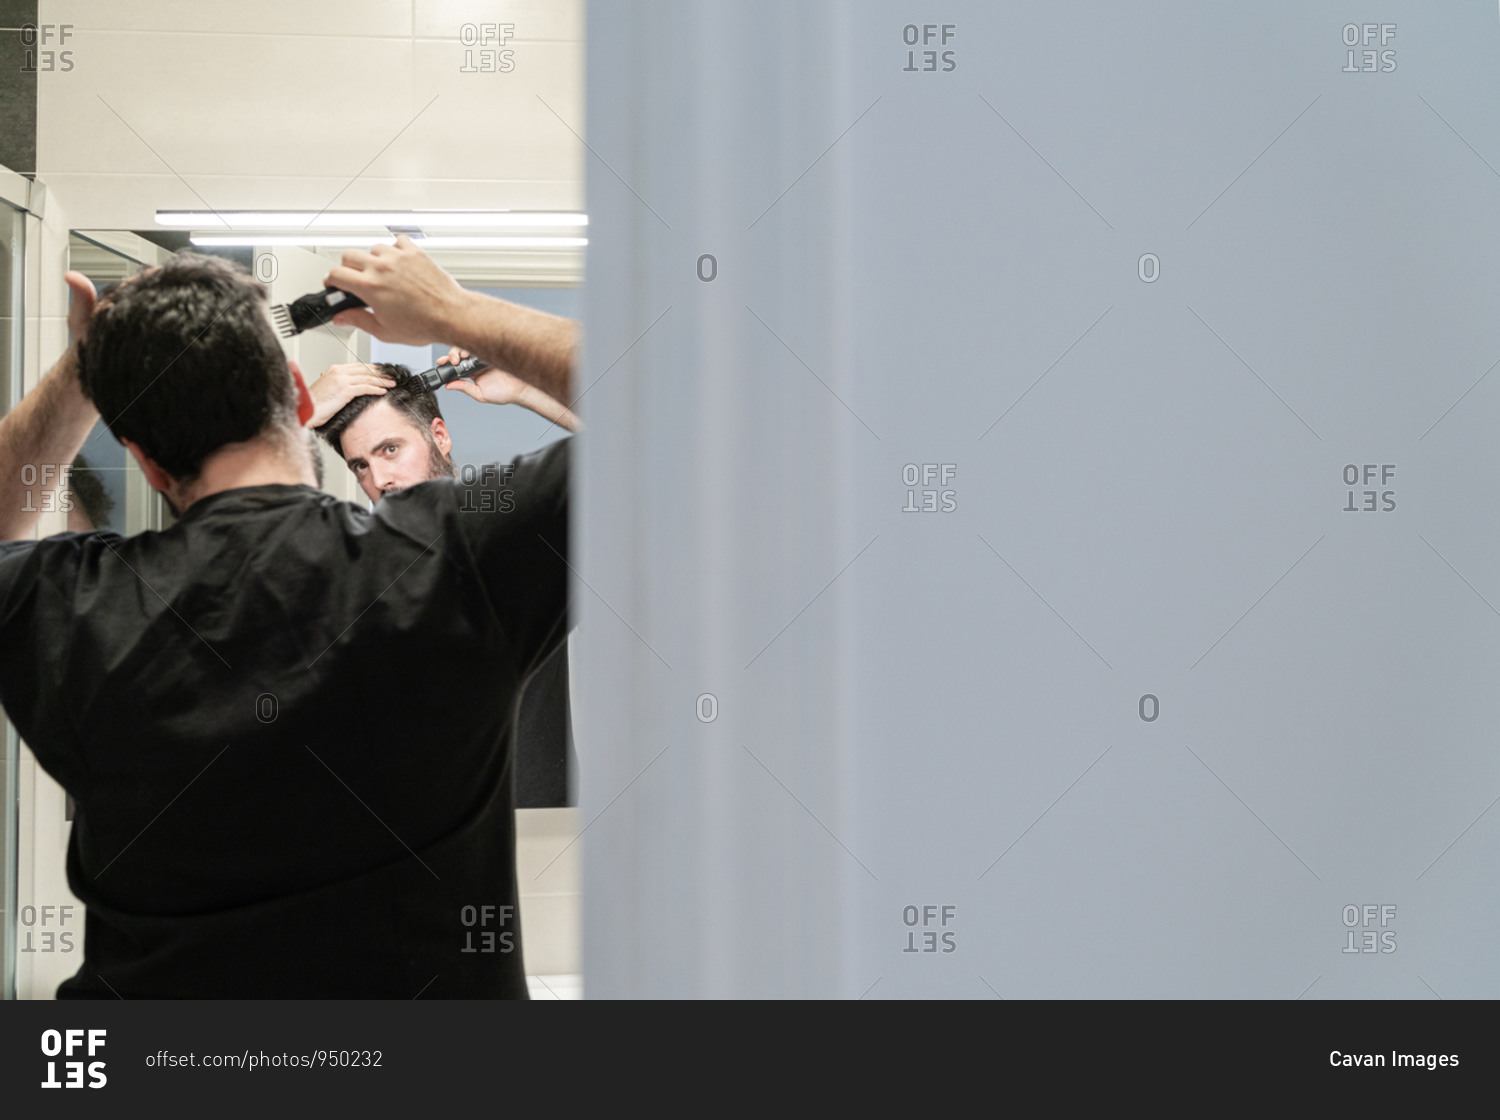 Self haircut. A man is cutting his hair with a hair clipper in the bathroom